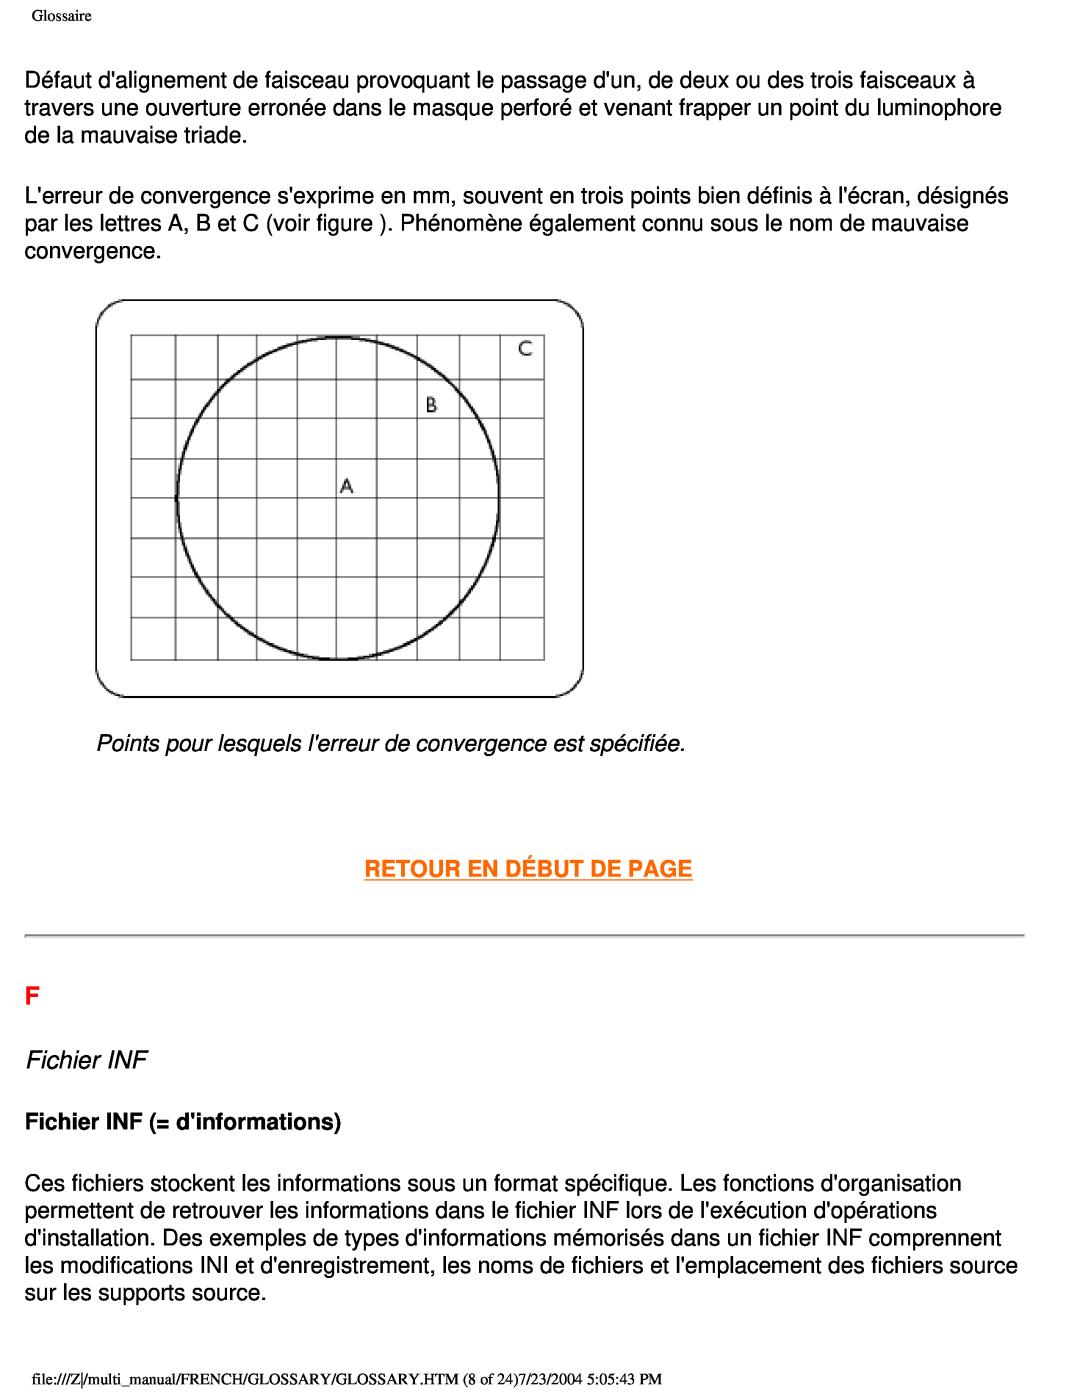 Philips 107B3 user manual Fichier INF, Retour En Début De Page 